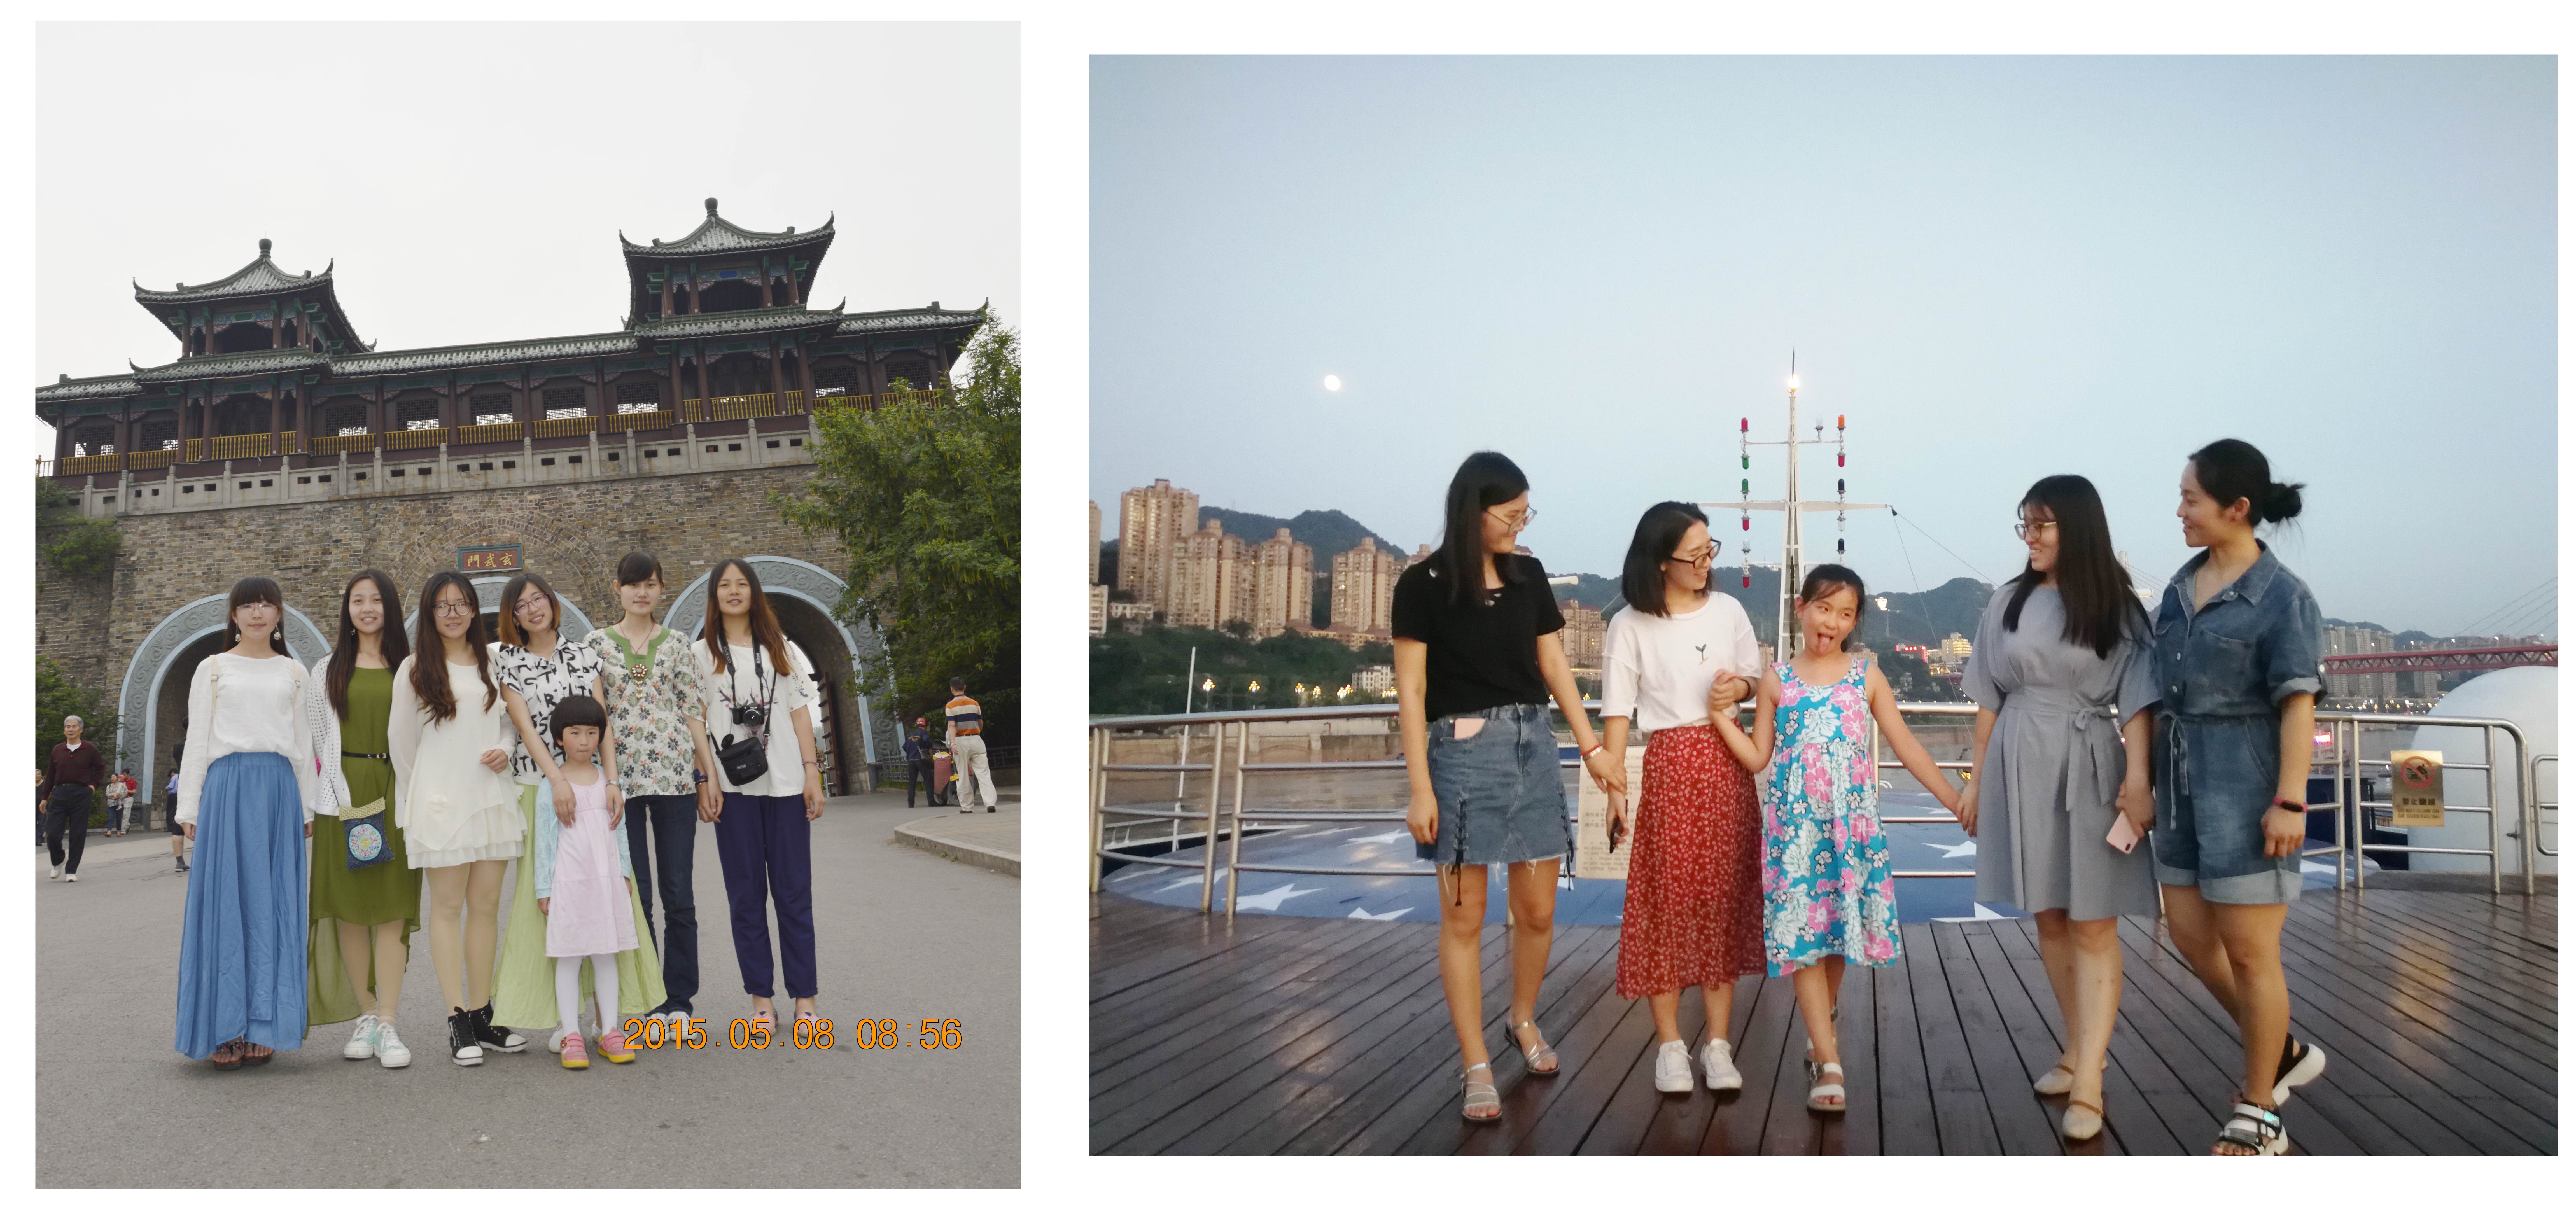 左：2015年5月摄于南京玄武湖|右：2019年8月摄于重庆朝天门码头-“维多利亚号”游轮甲板上